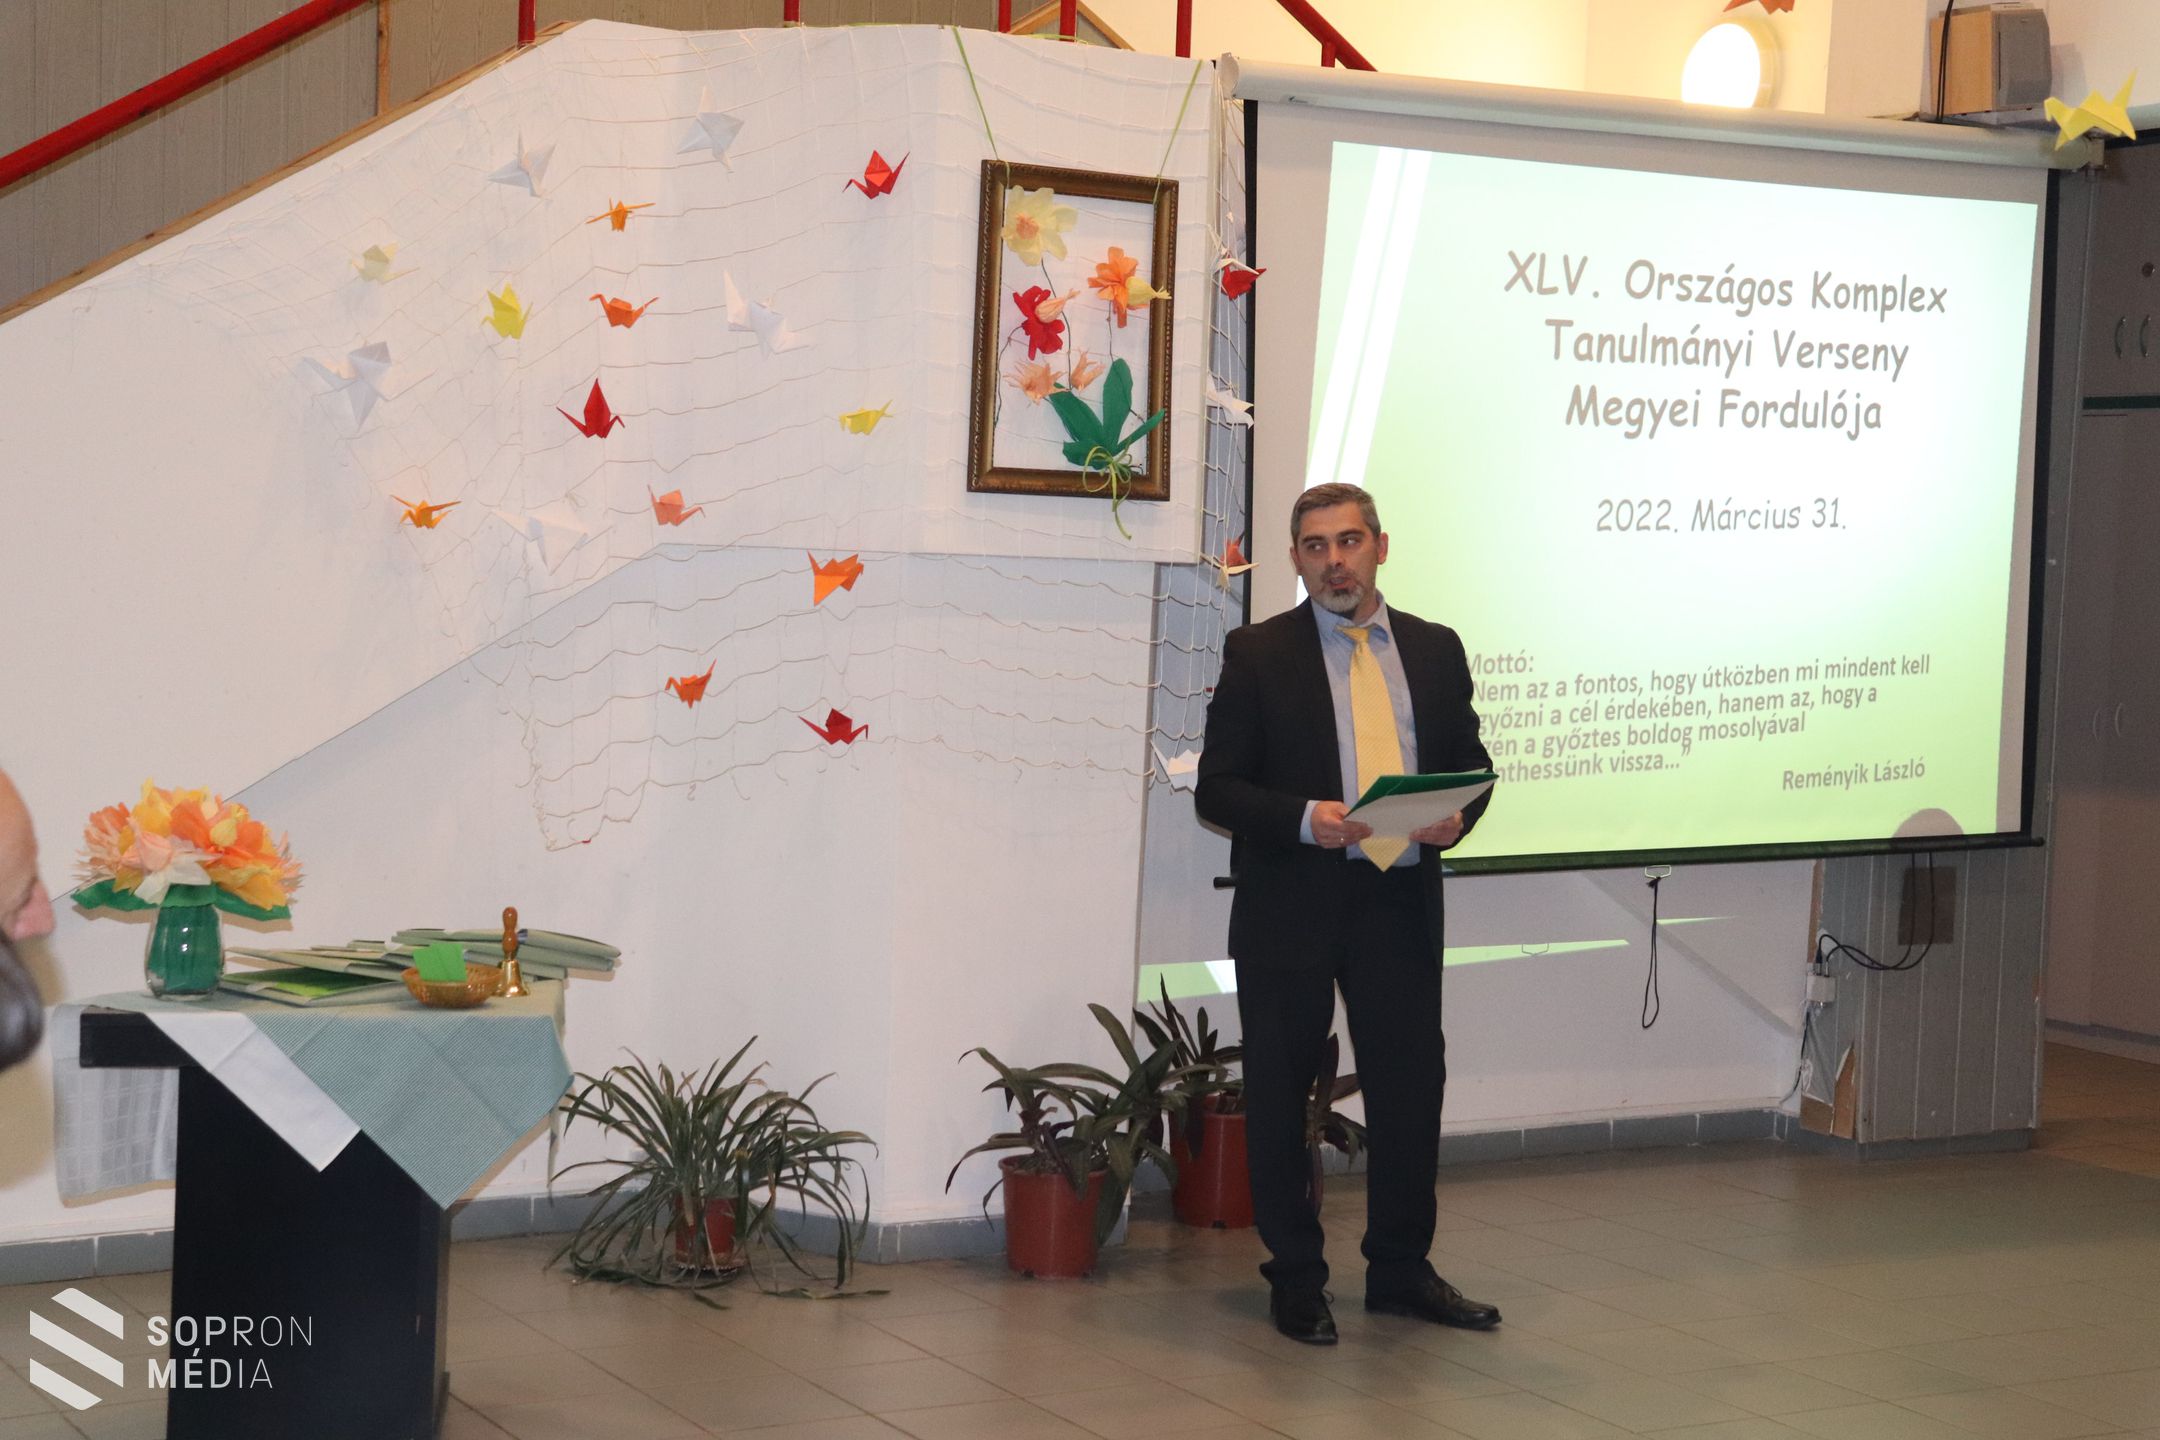 Soproni siker a Komplex Tanulmányi Verseny megyei fordulóján